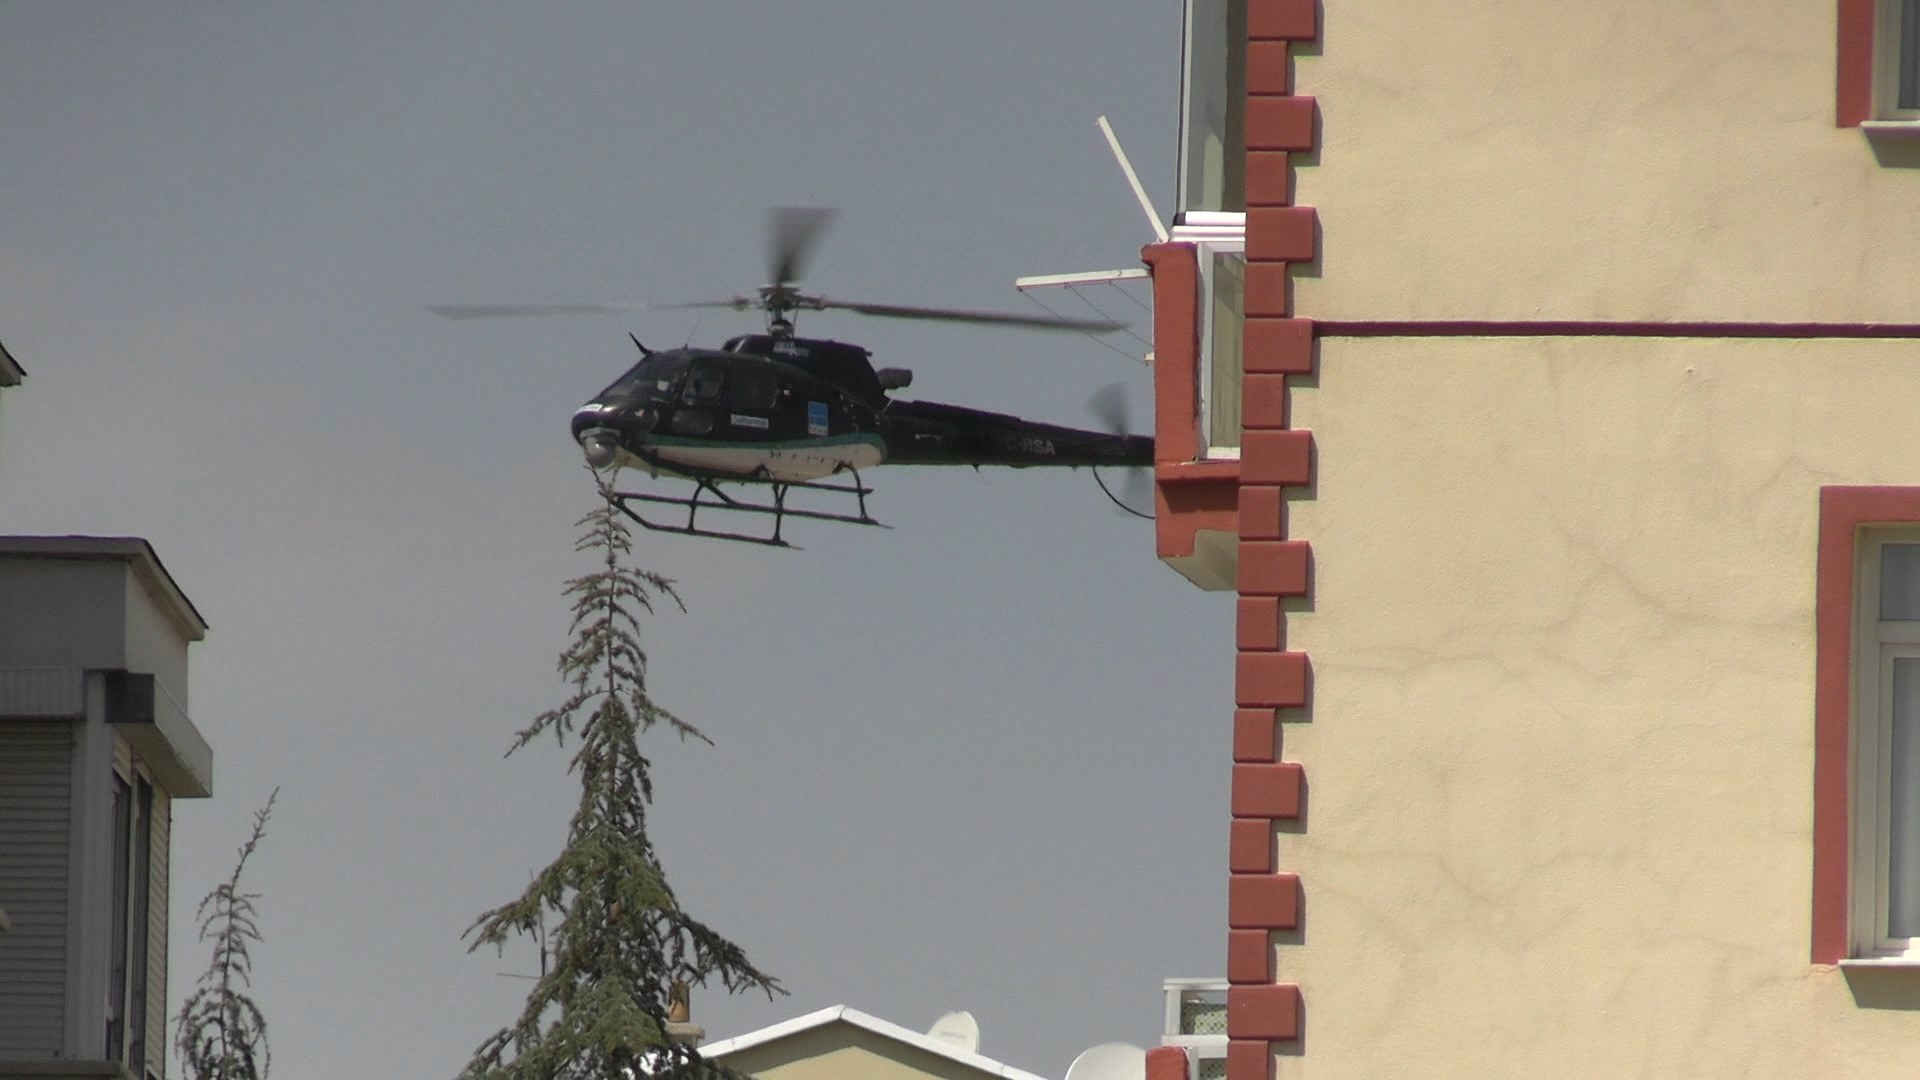 Konya’da çatıların hemen üzerinden uçtu! Gün boyu dolaşan siyah helikopterin sırrı çözüldü